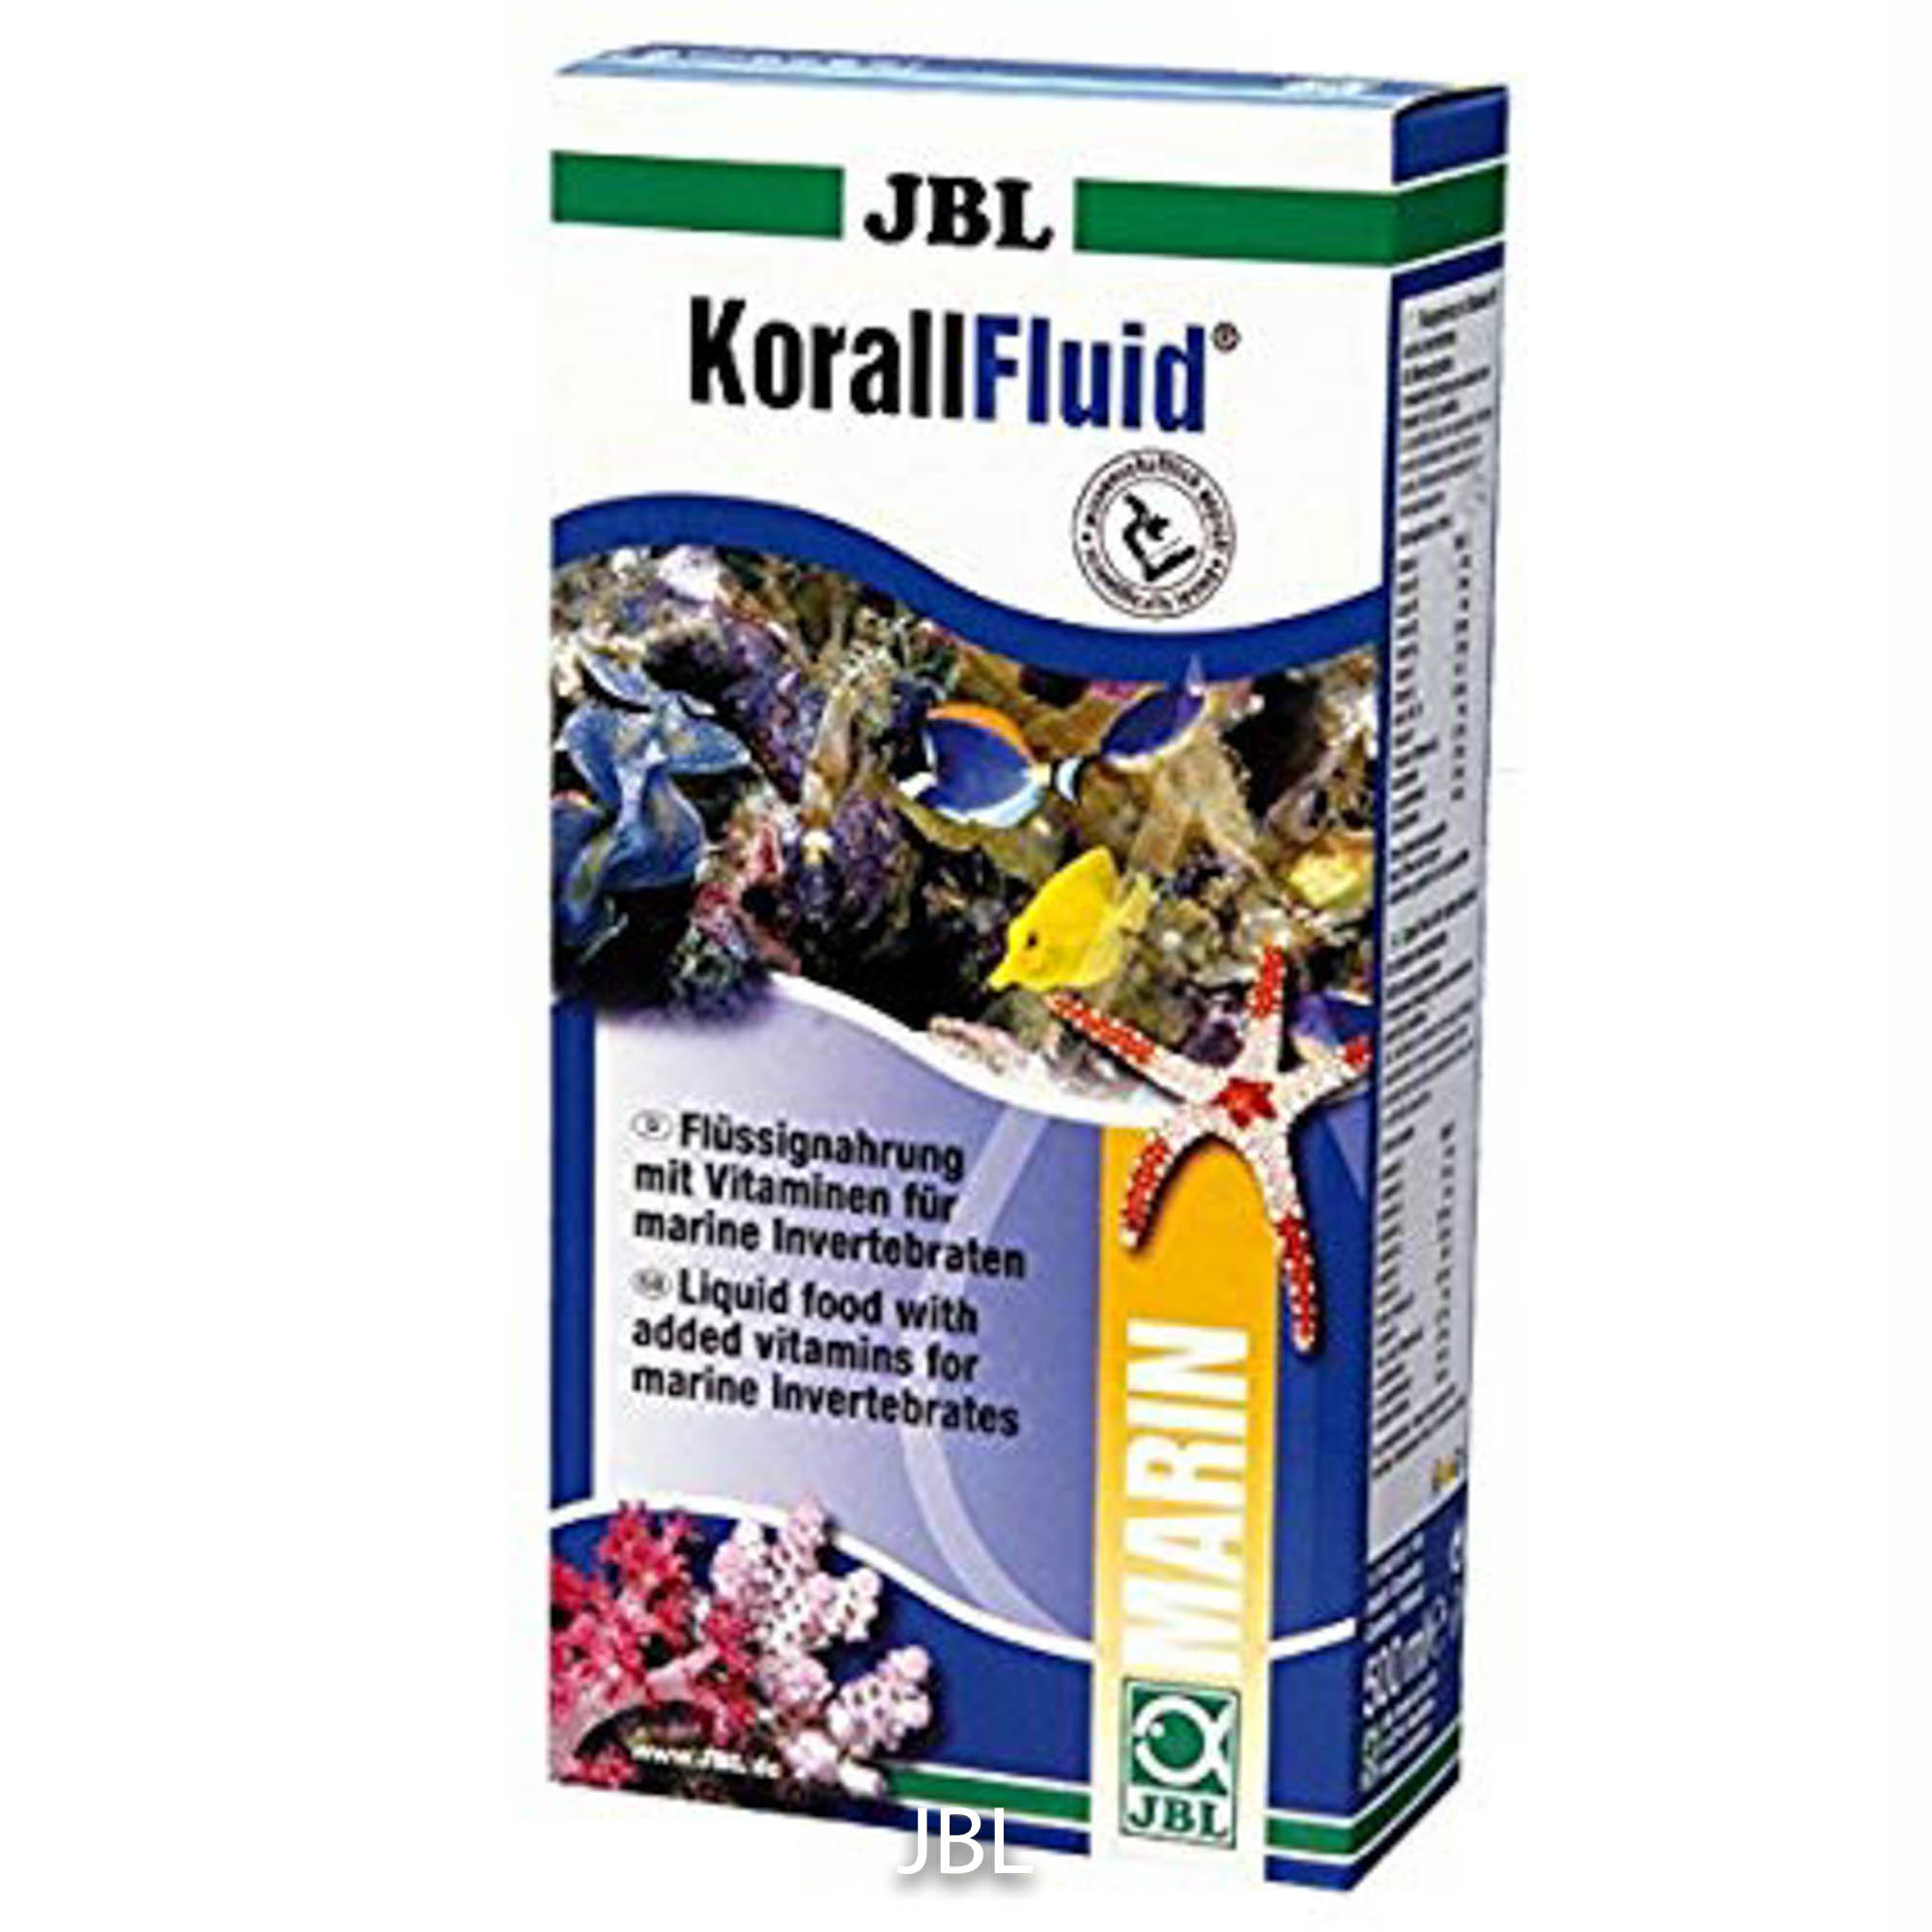    JBL Koral fliud 100  900